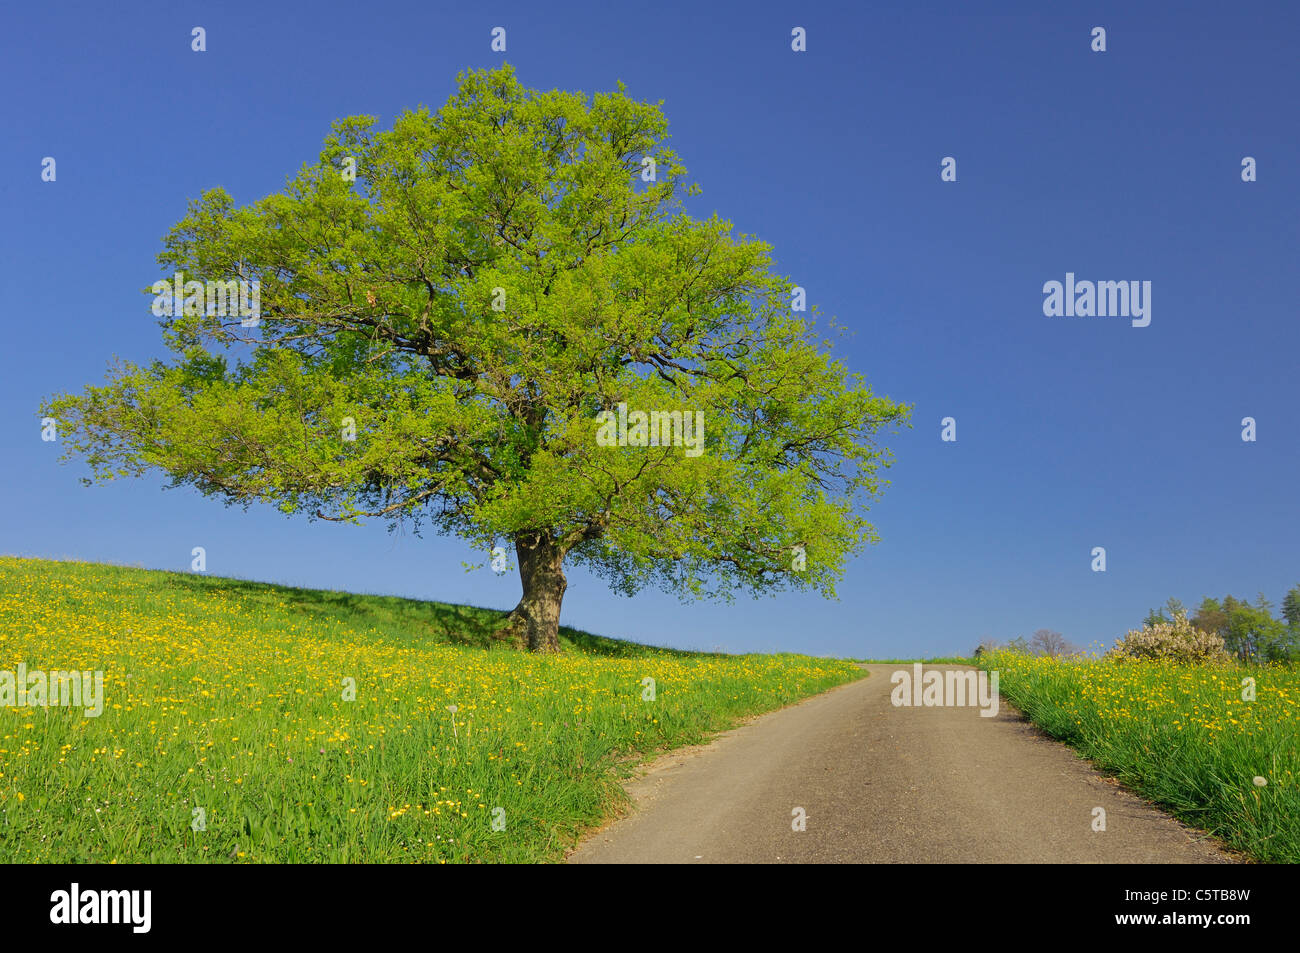 Switzerland, Oak tree in field Stock Photo